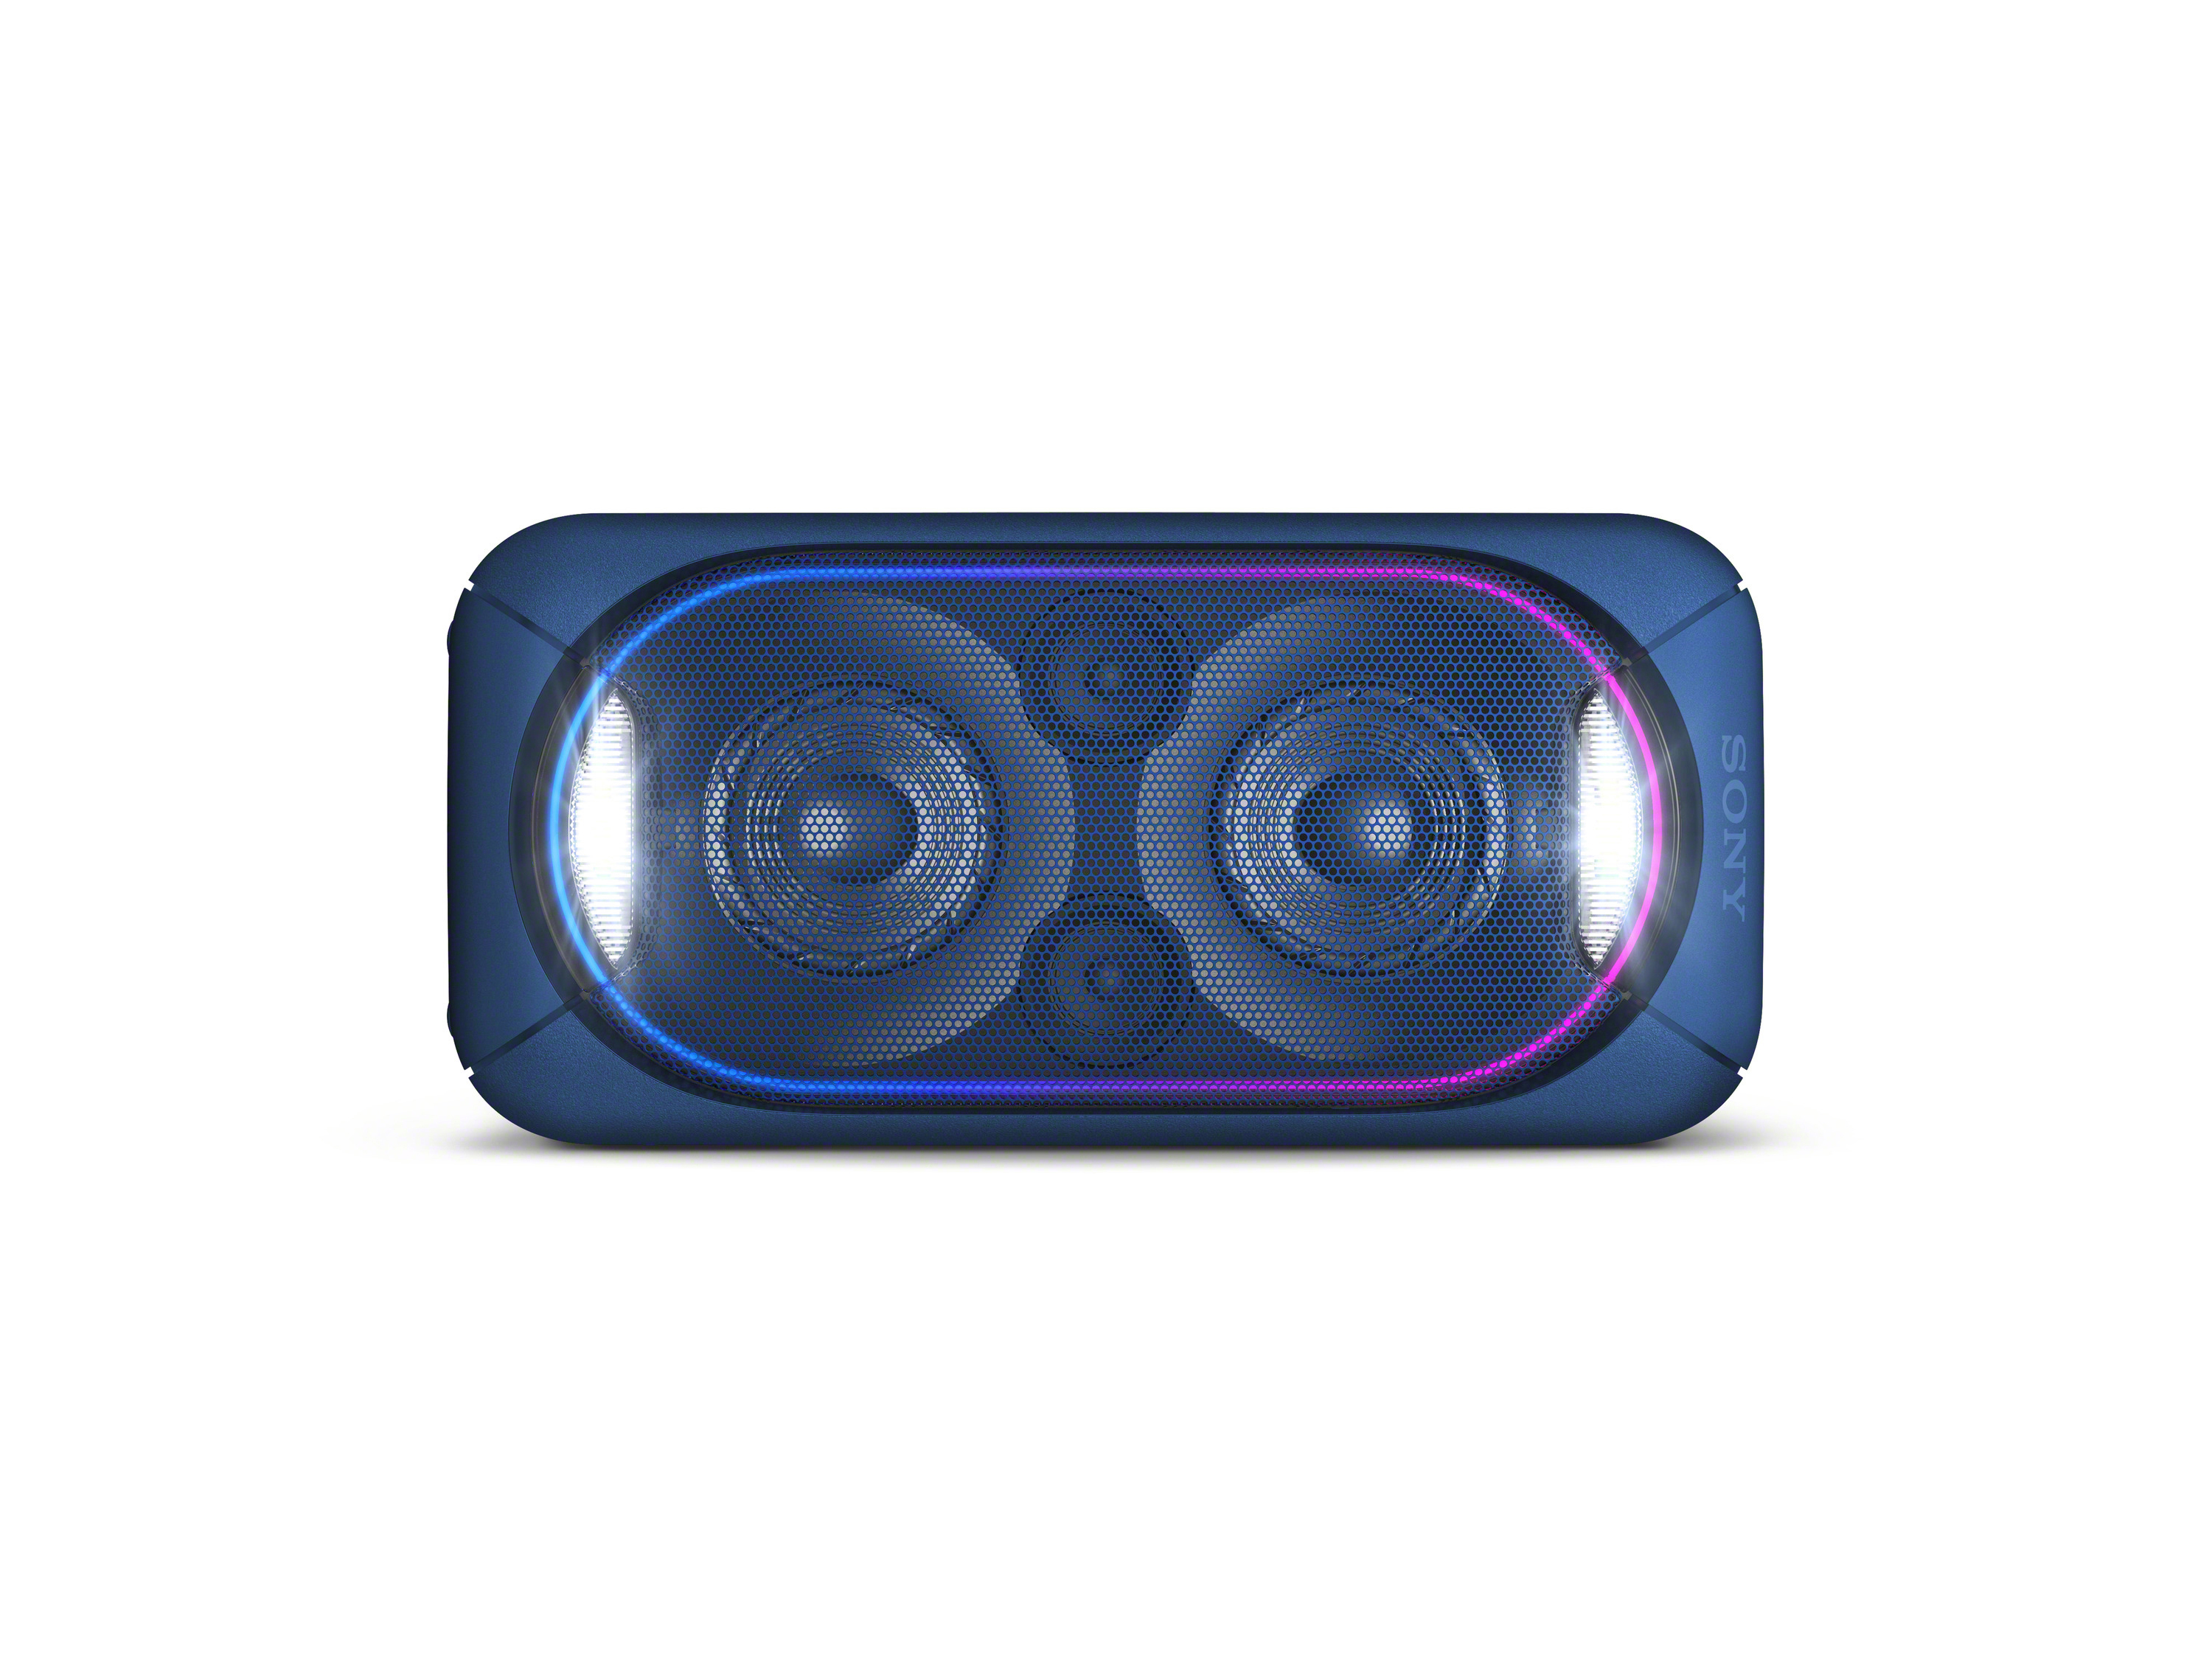 SONY GTK-XB60 Wireless Blau Chain Bluetooth Lautsprecher, Party